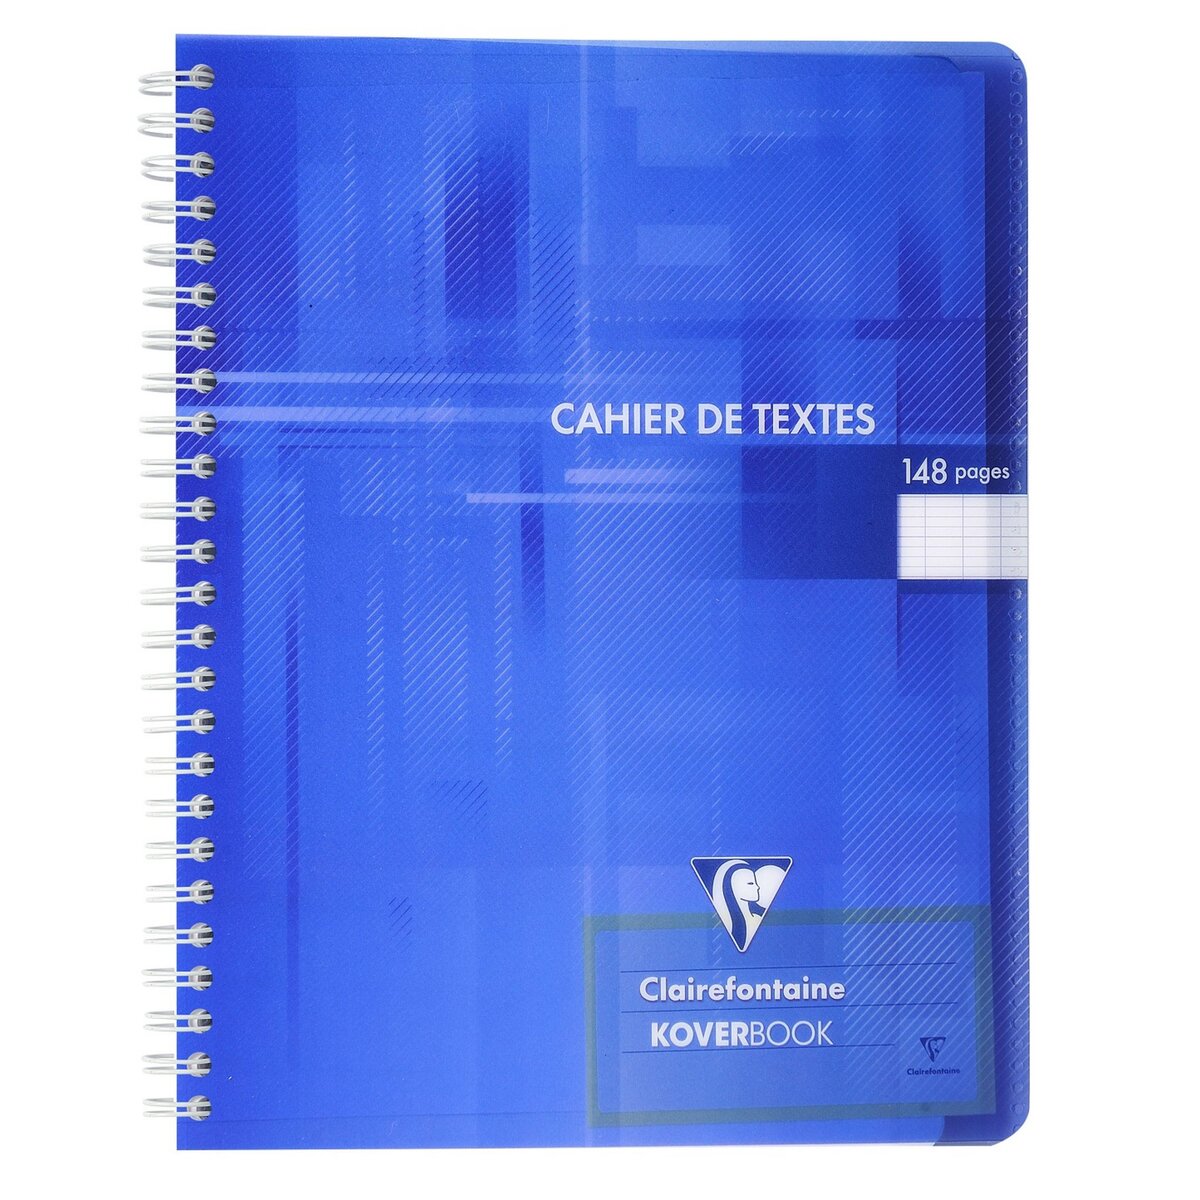 CLAIREFONTAINE Cahier de texte à spirale Koverbook 17x22cm bleu foncé